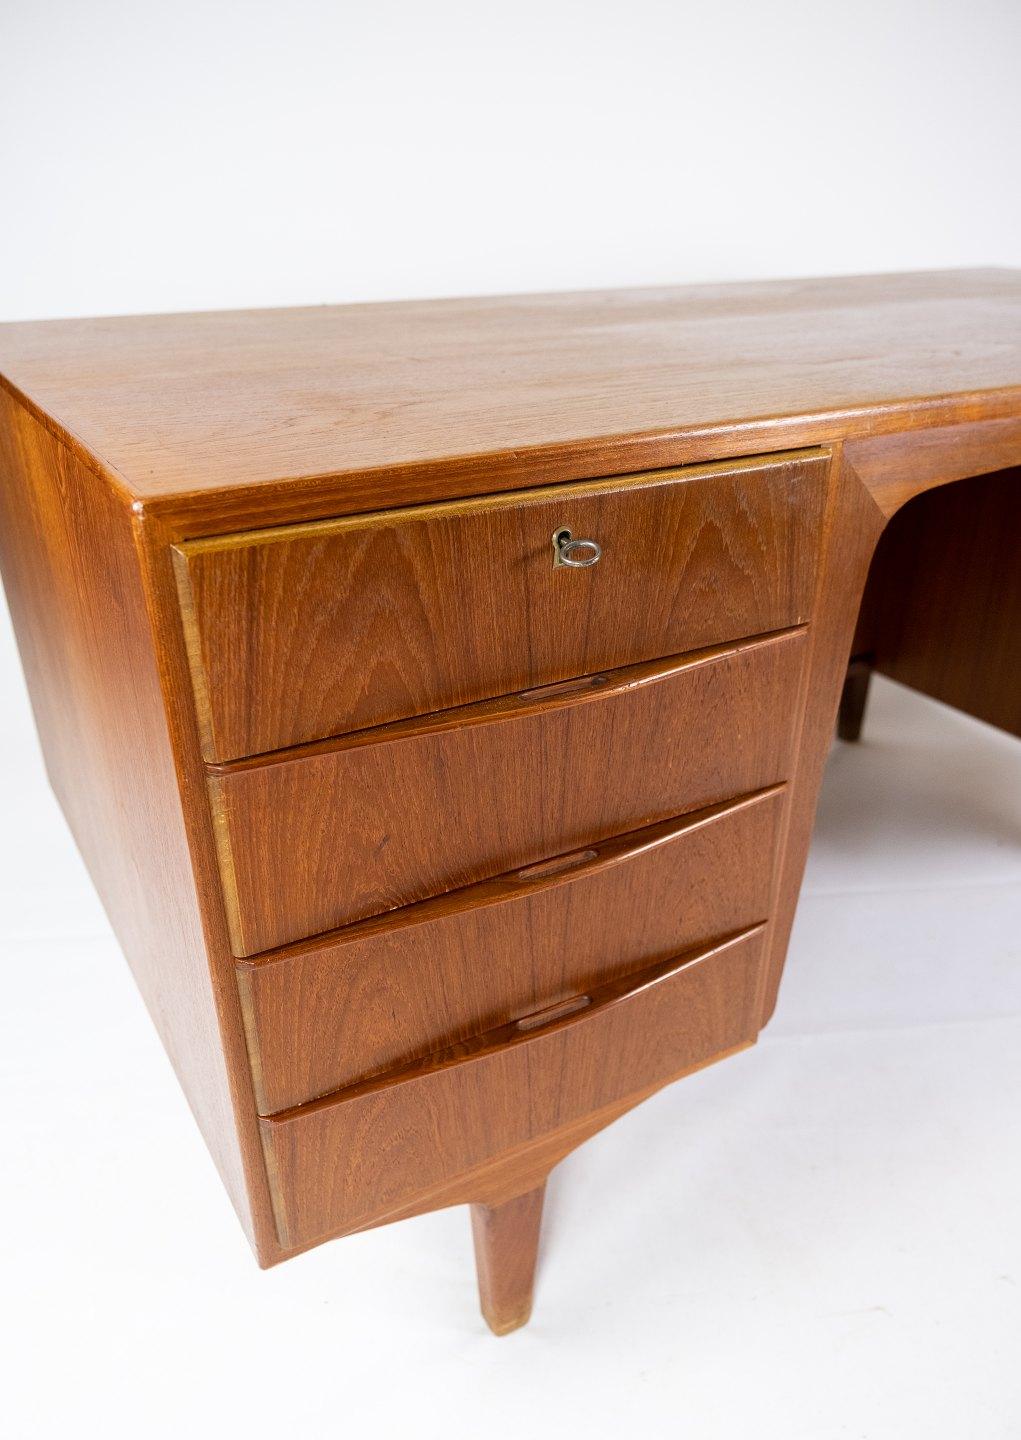 Mid-Century Modern Desk Made In Teak, Danish Design From 1960s For Sale